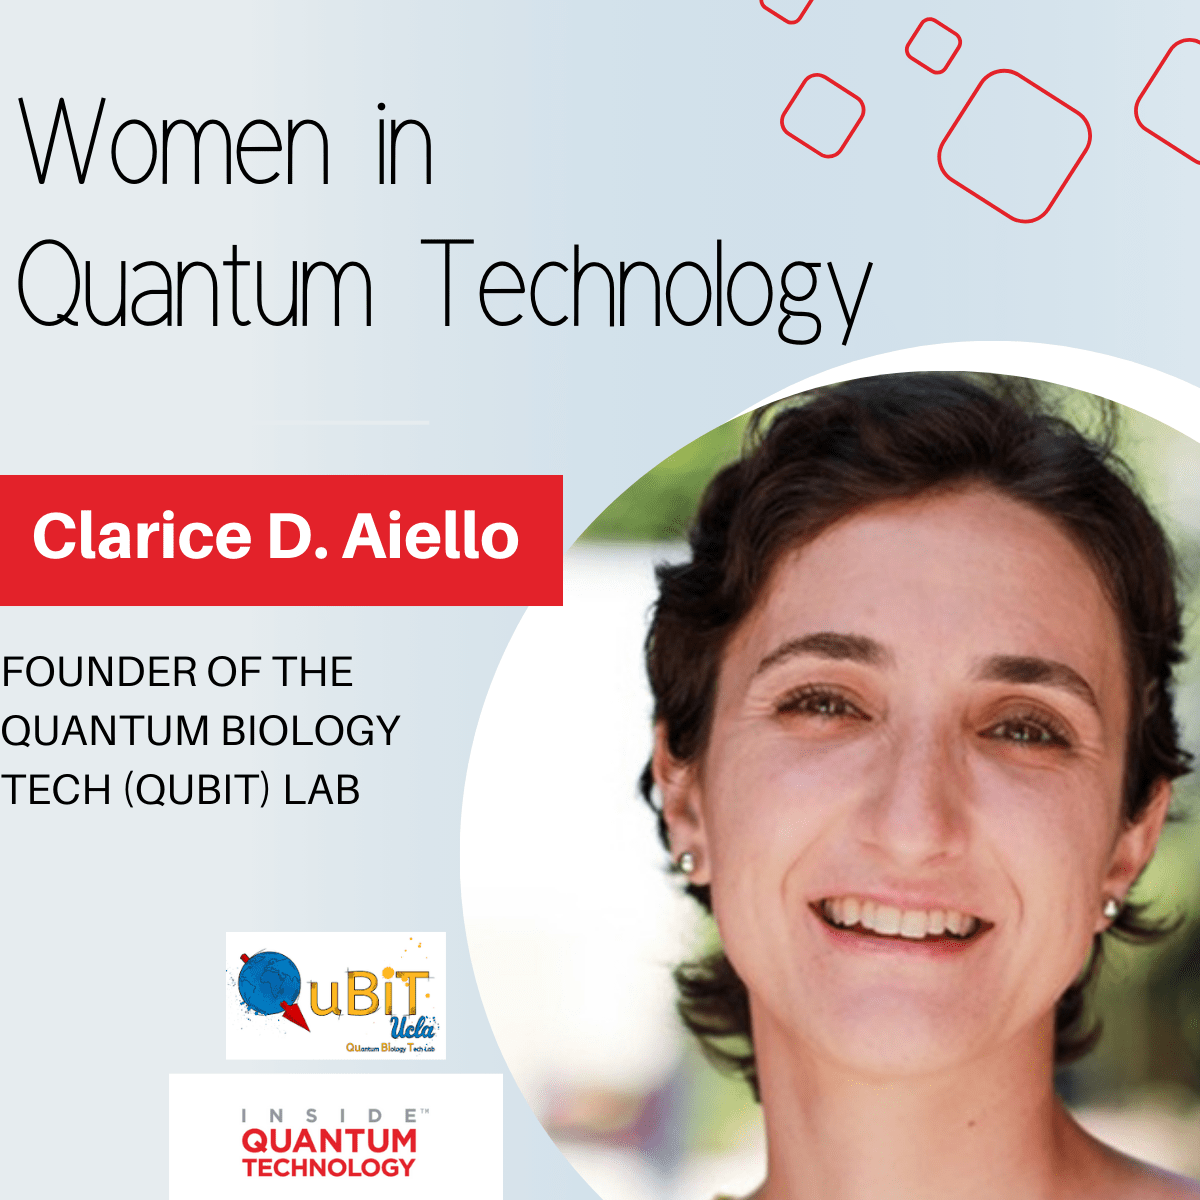 زنان فناوری کوانتومی: دکتر کلاریس دی. آیلو از آزمایشگاه فناوری کوانتومی (QuBiT) - فناوری درون کوانتومی